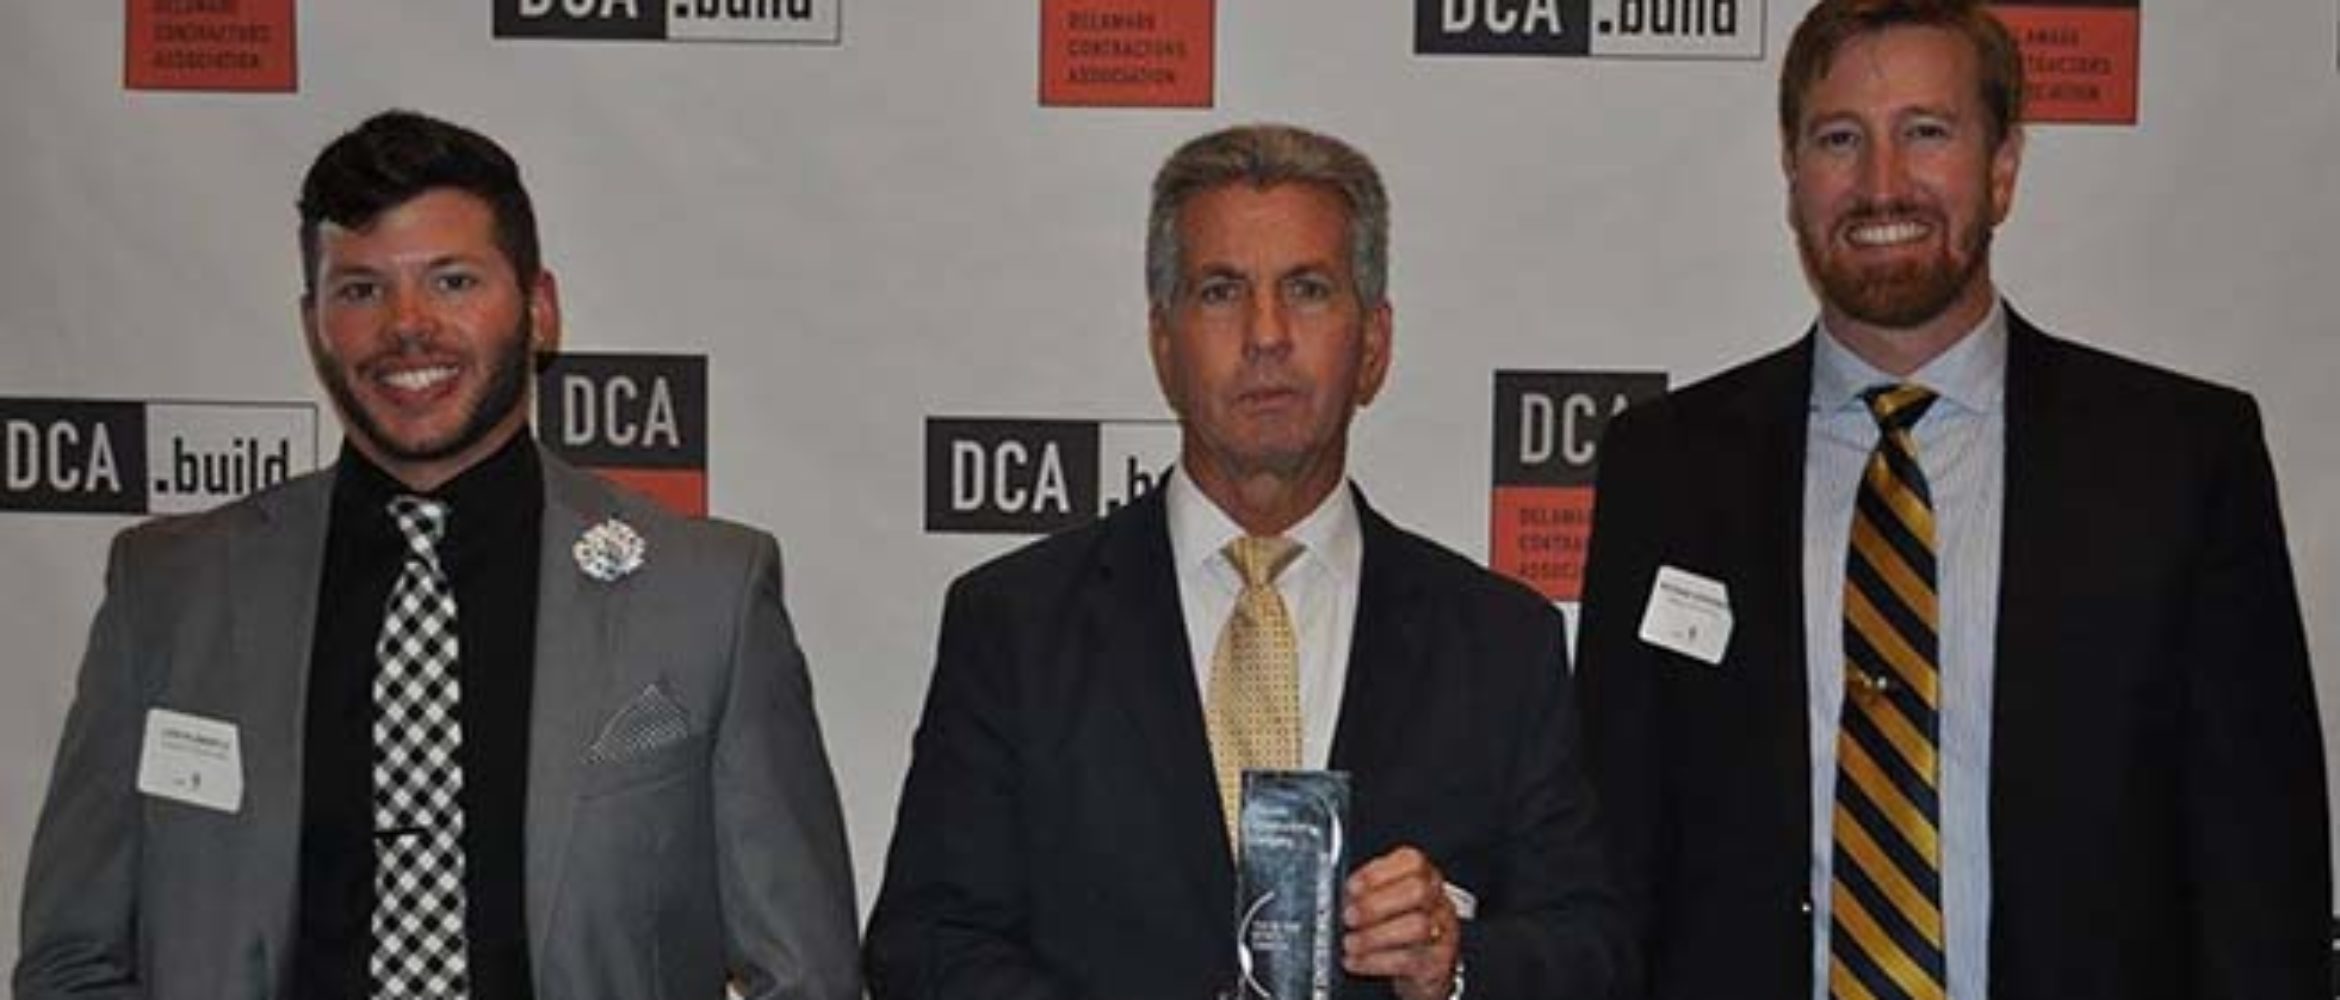 CCC Receives 2017 DCA Construction Excellence Award